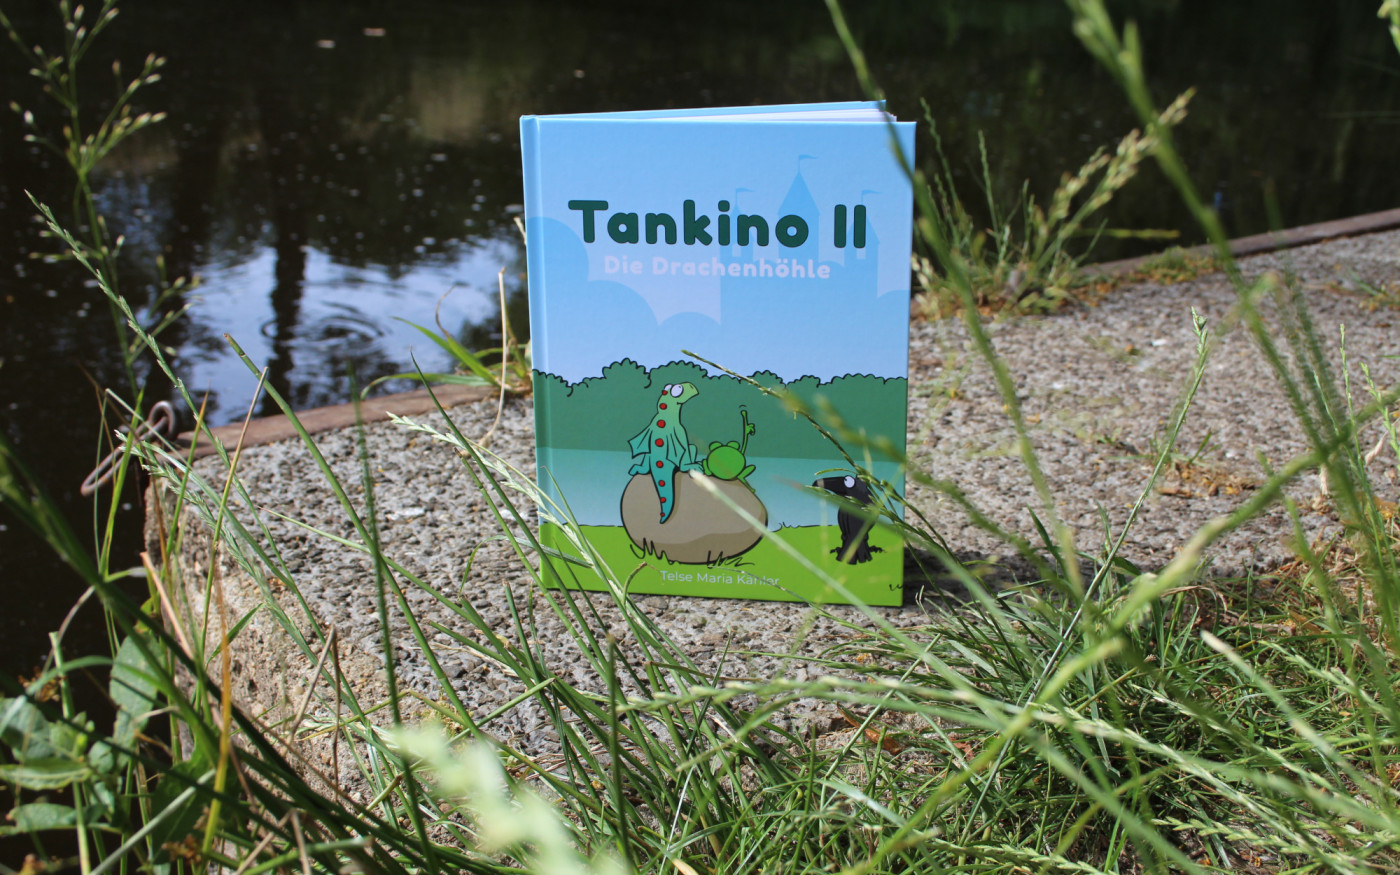 Wohnung gesucht! Im neuen Kinderbuch der Isenbüttelerin Telse Maria Kähler begibt sich der Tankumsee-Drache Tankino auf die Reise in ein sicheres Zuhause